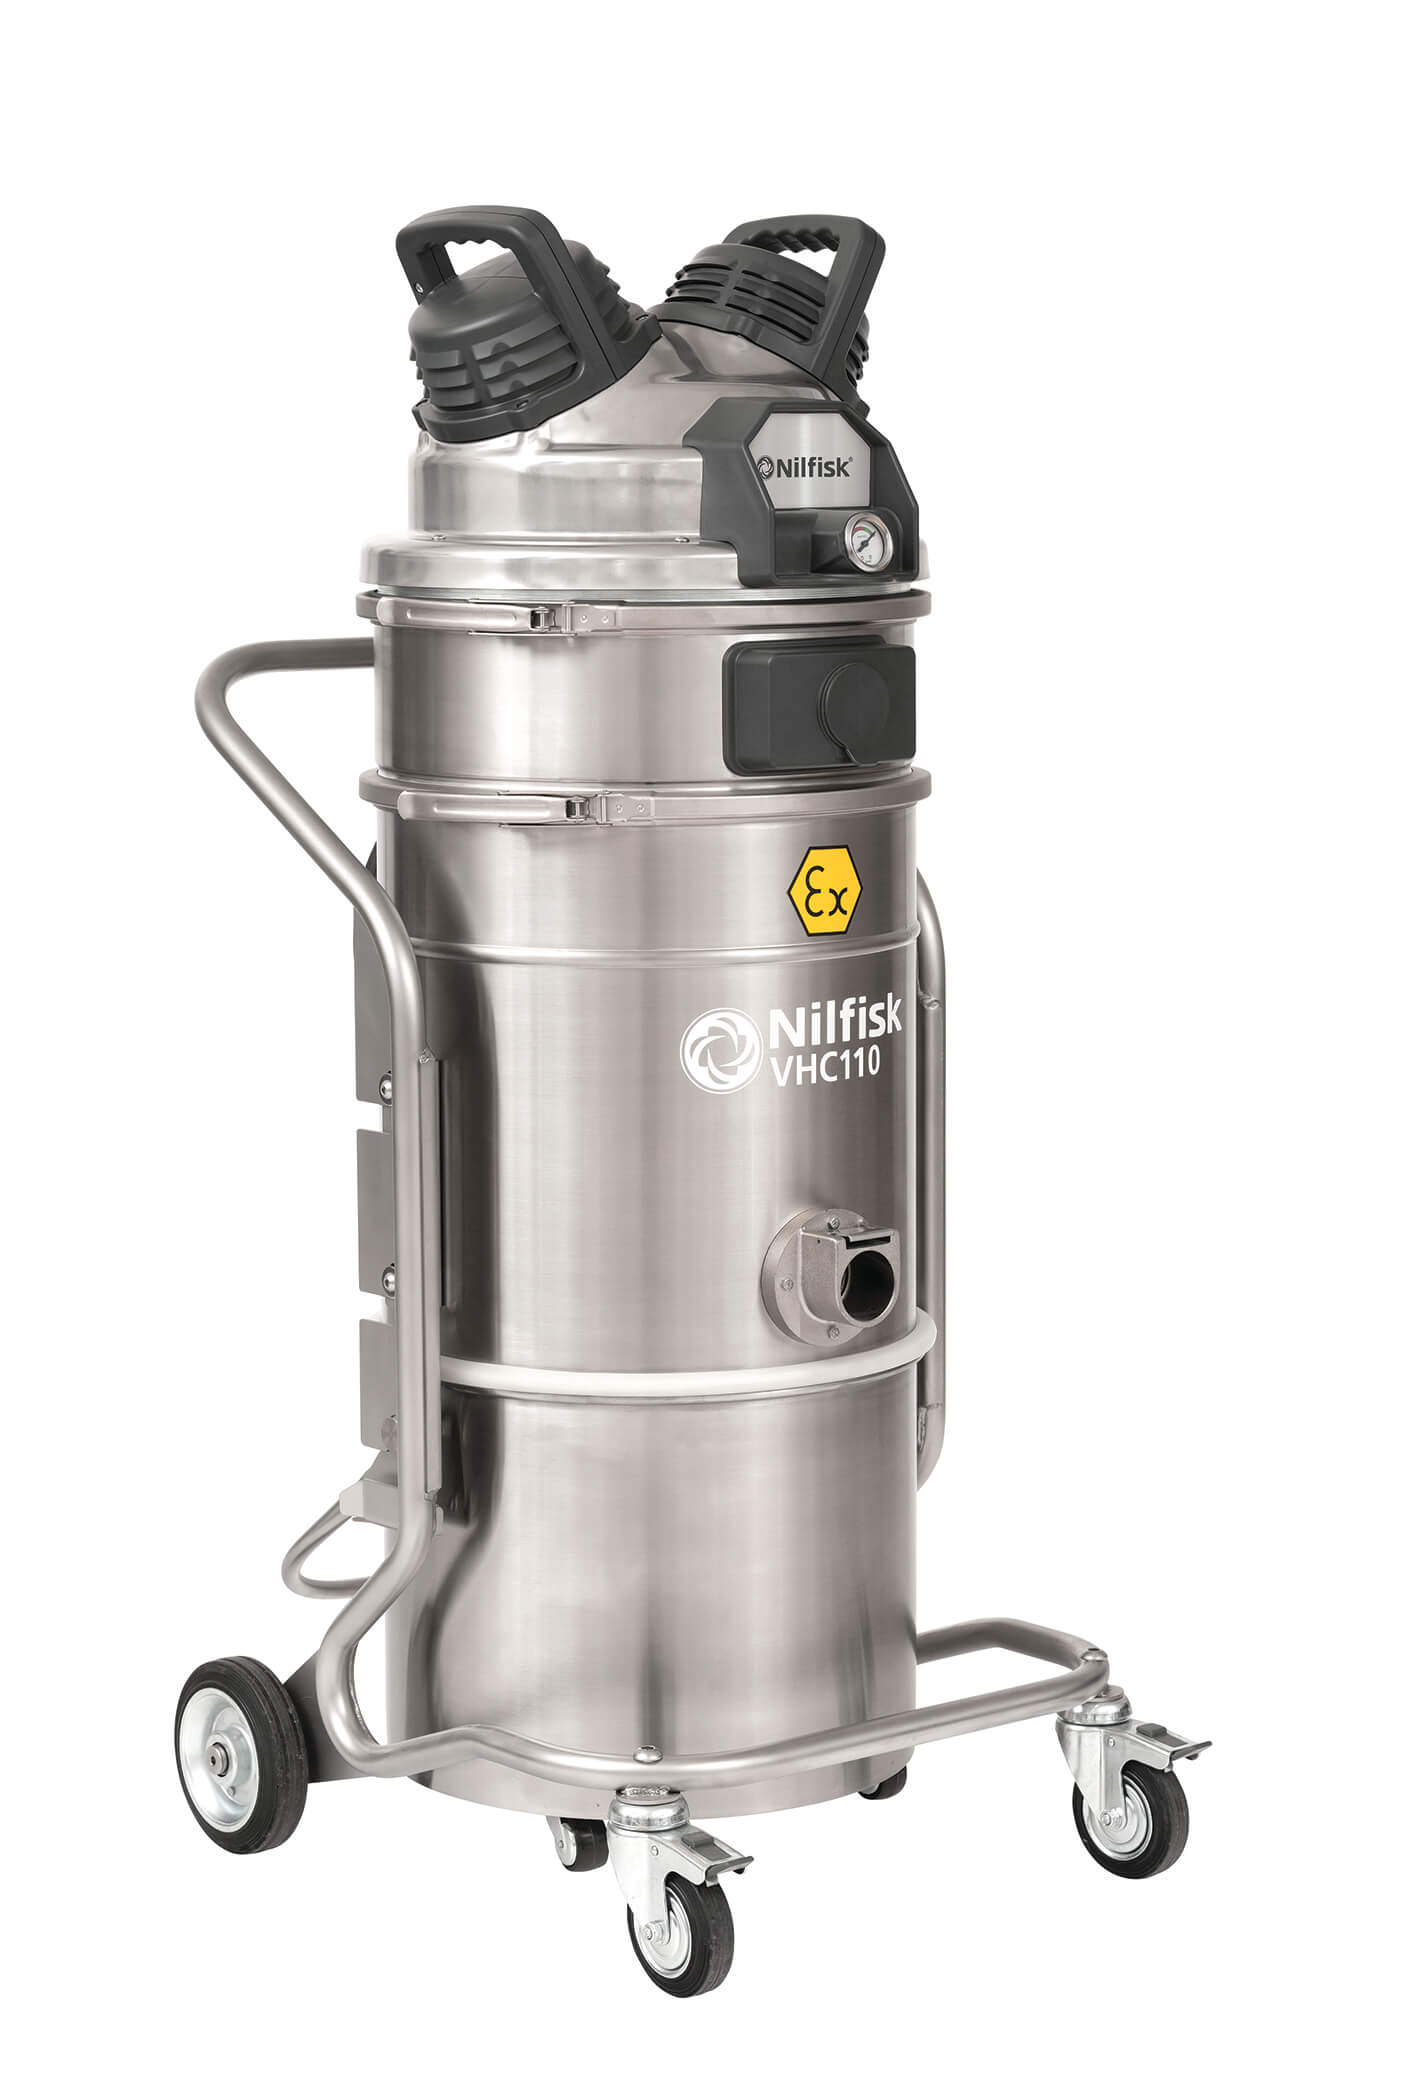 VHC110 EXP Air-Operated Hazardous Location Vacuum Cleaner